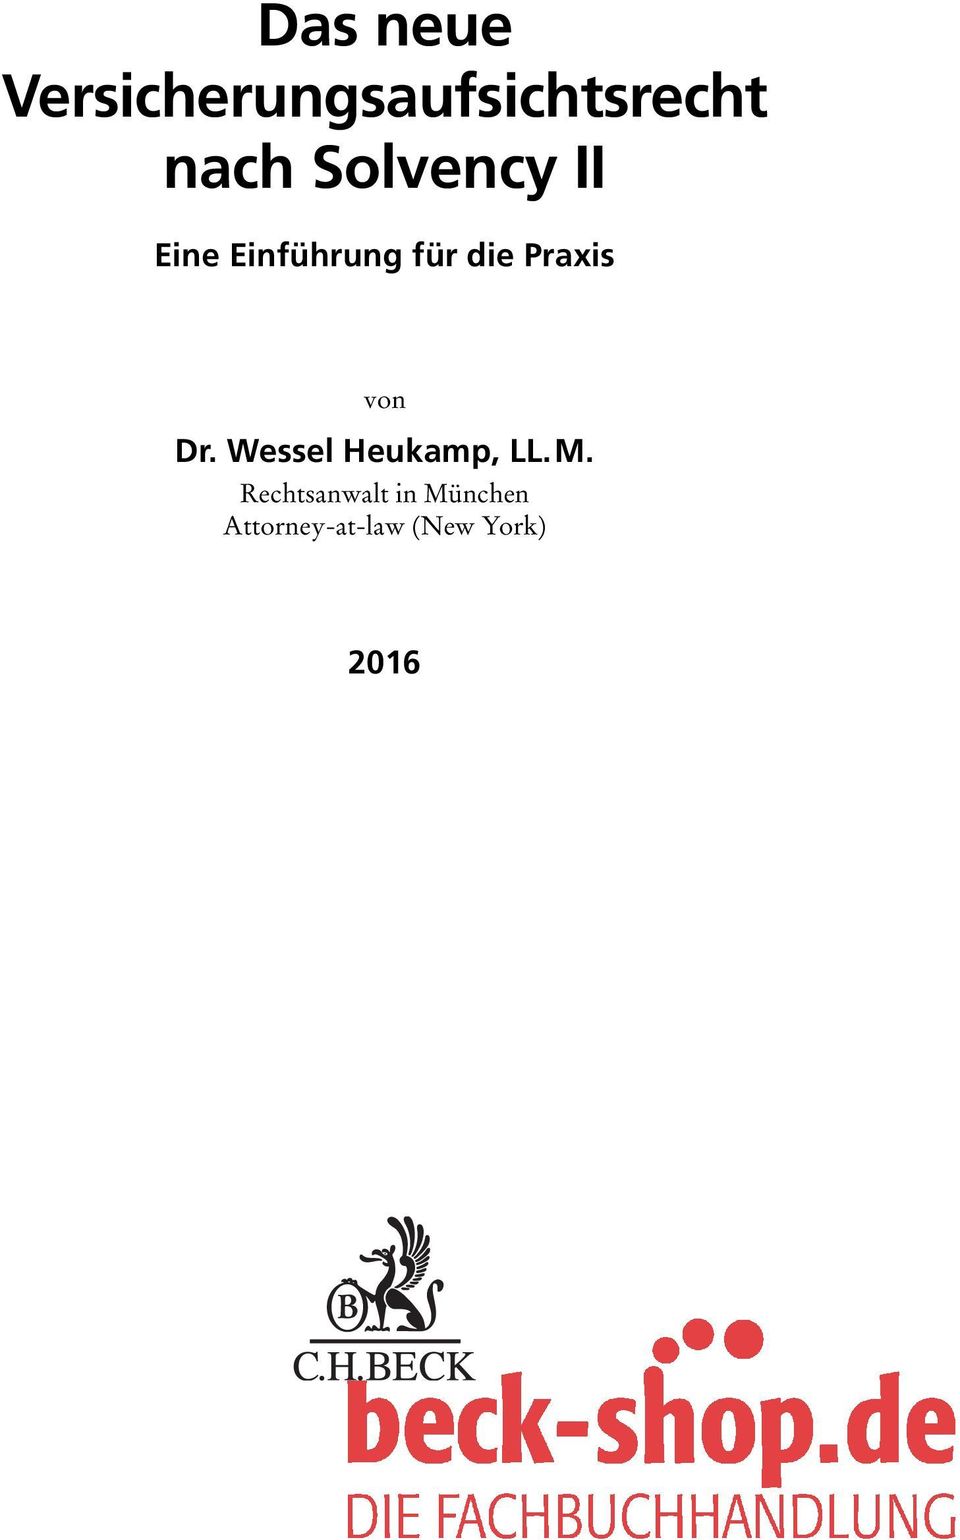 von Dr. Wessel Heukamp, LL.M.